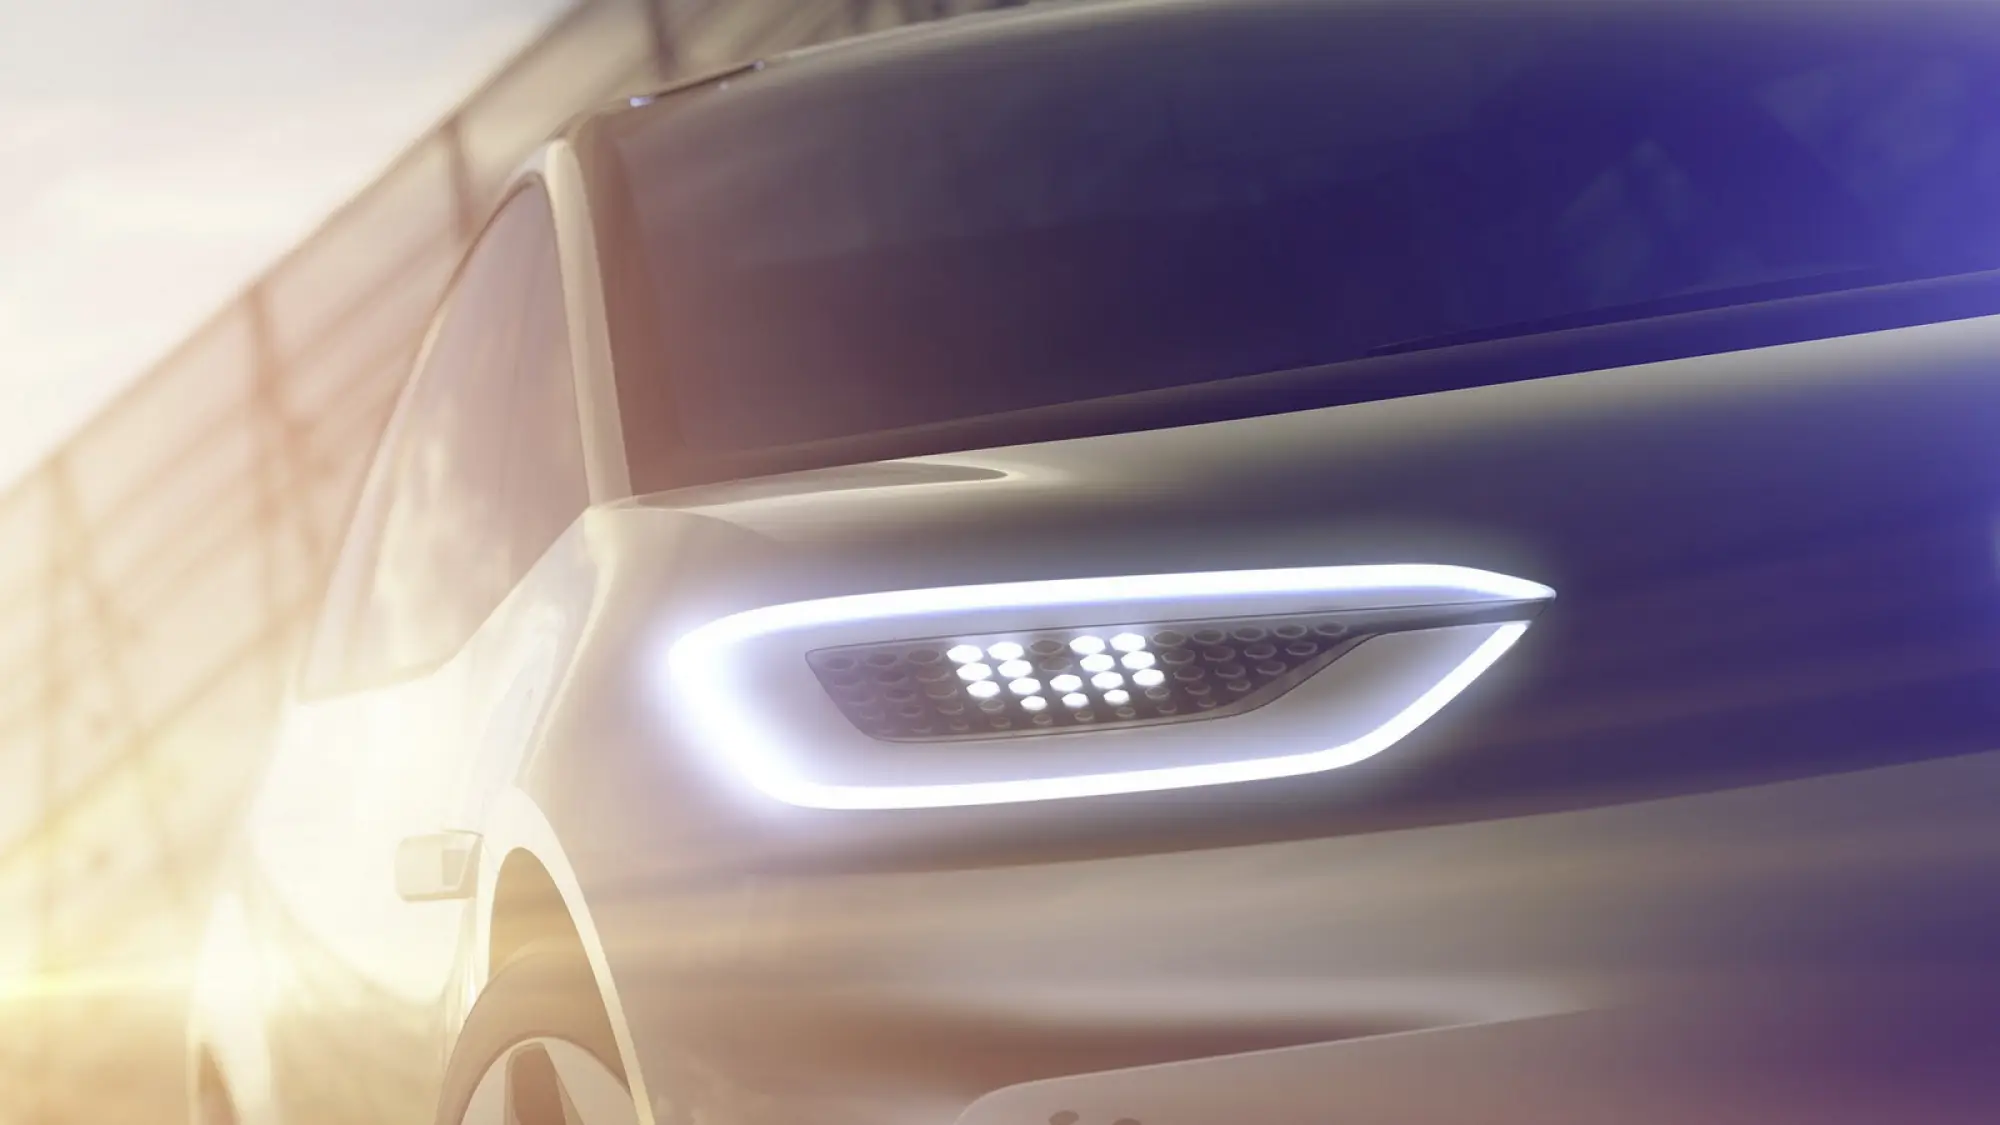 Volkswagen - nuova concept car elettrica al Salone di Parigi 2016 (foto teaser) - 1